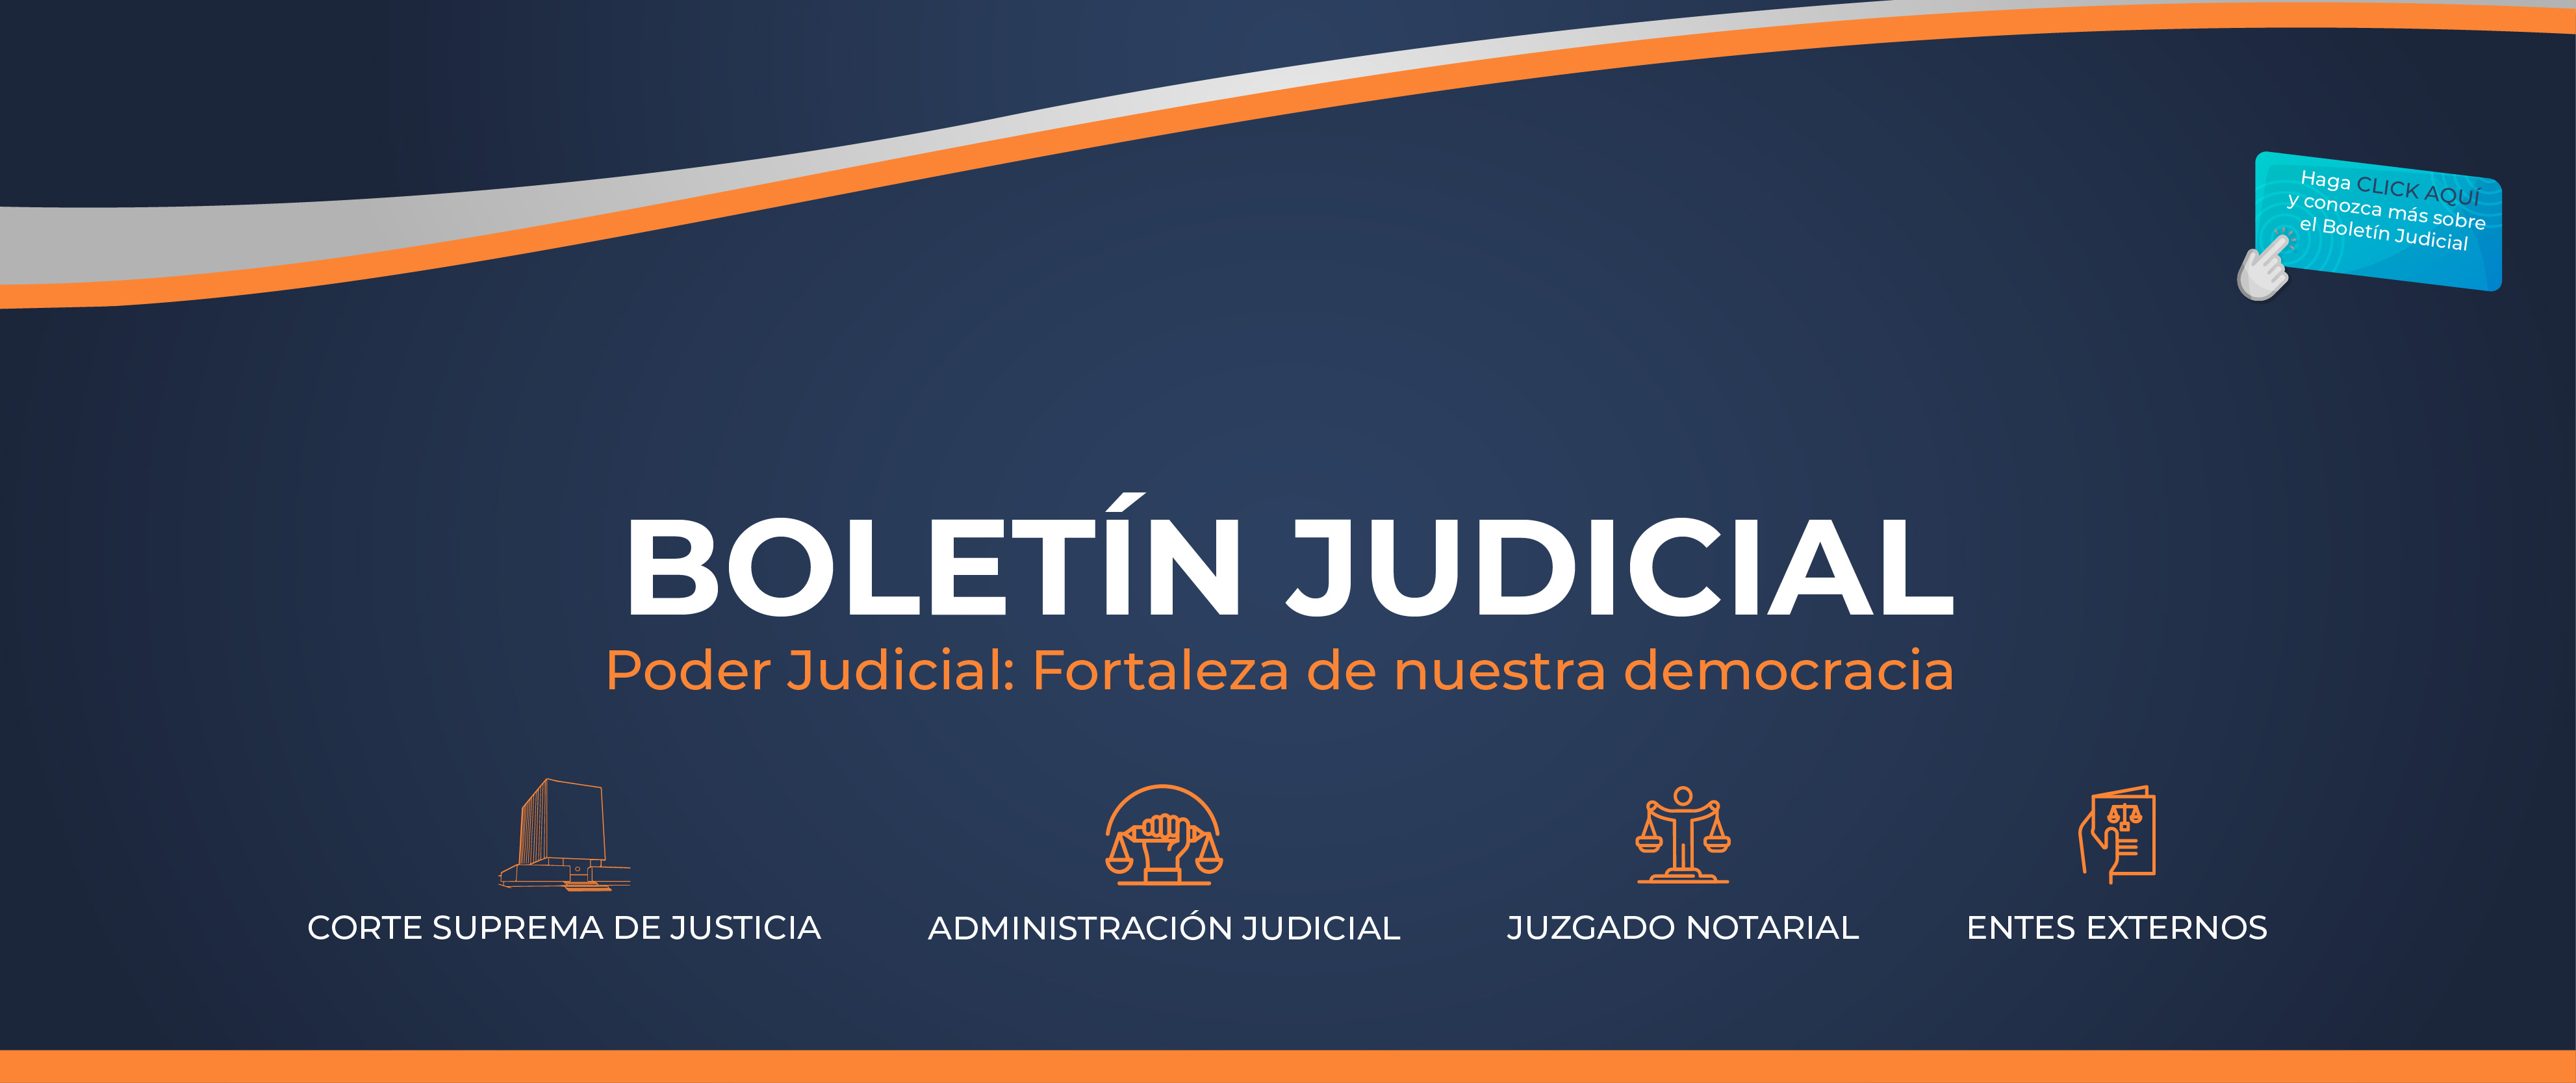 Poder Judicial FORTALEZA DE NUESTRA DEMOCRACIA